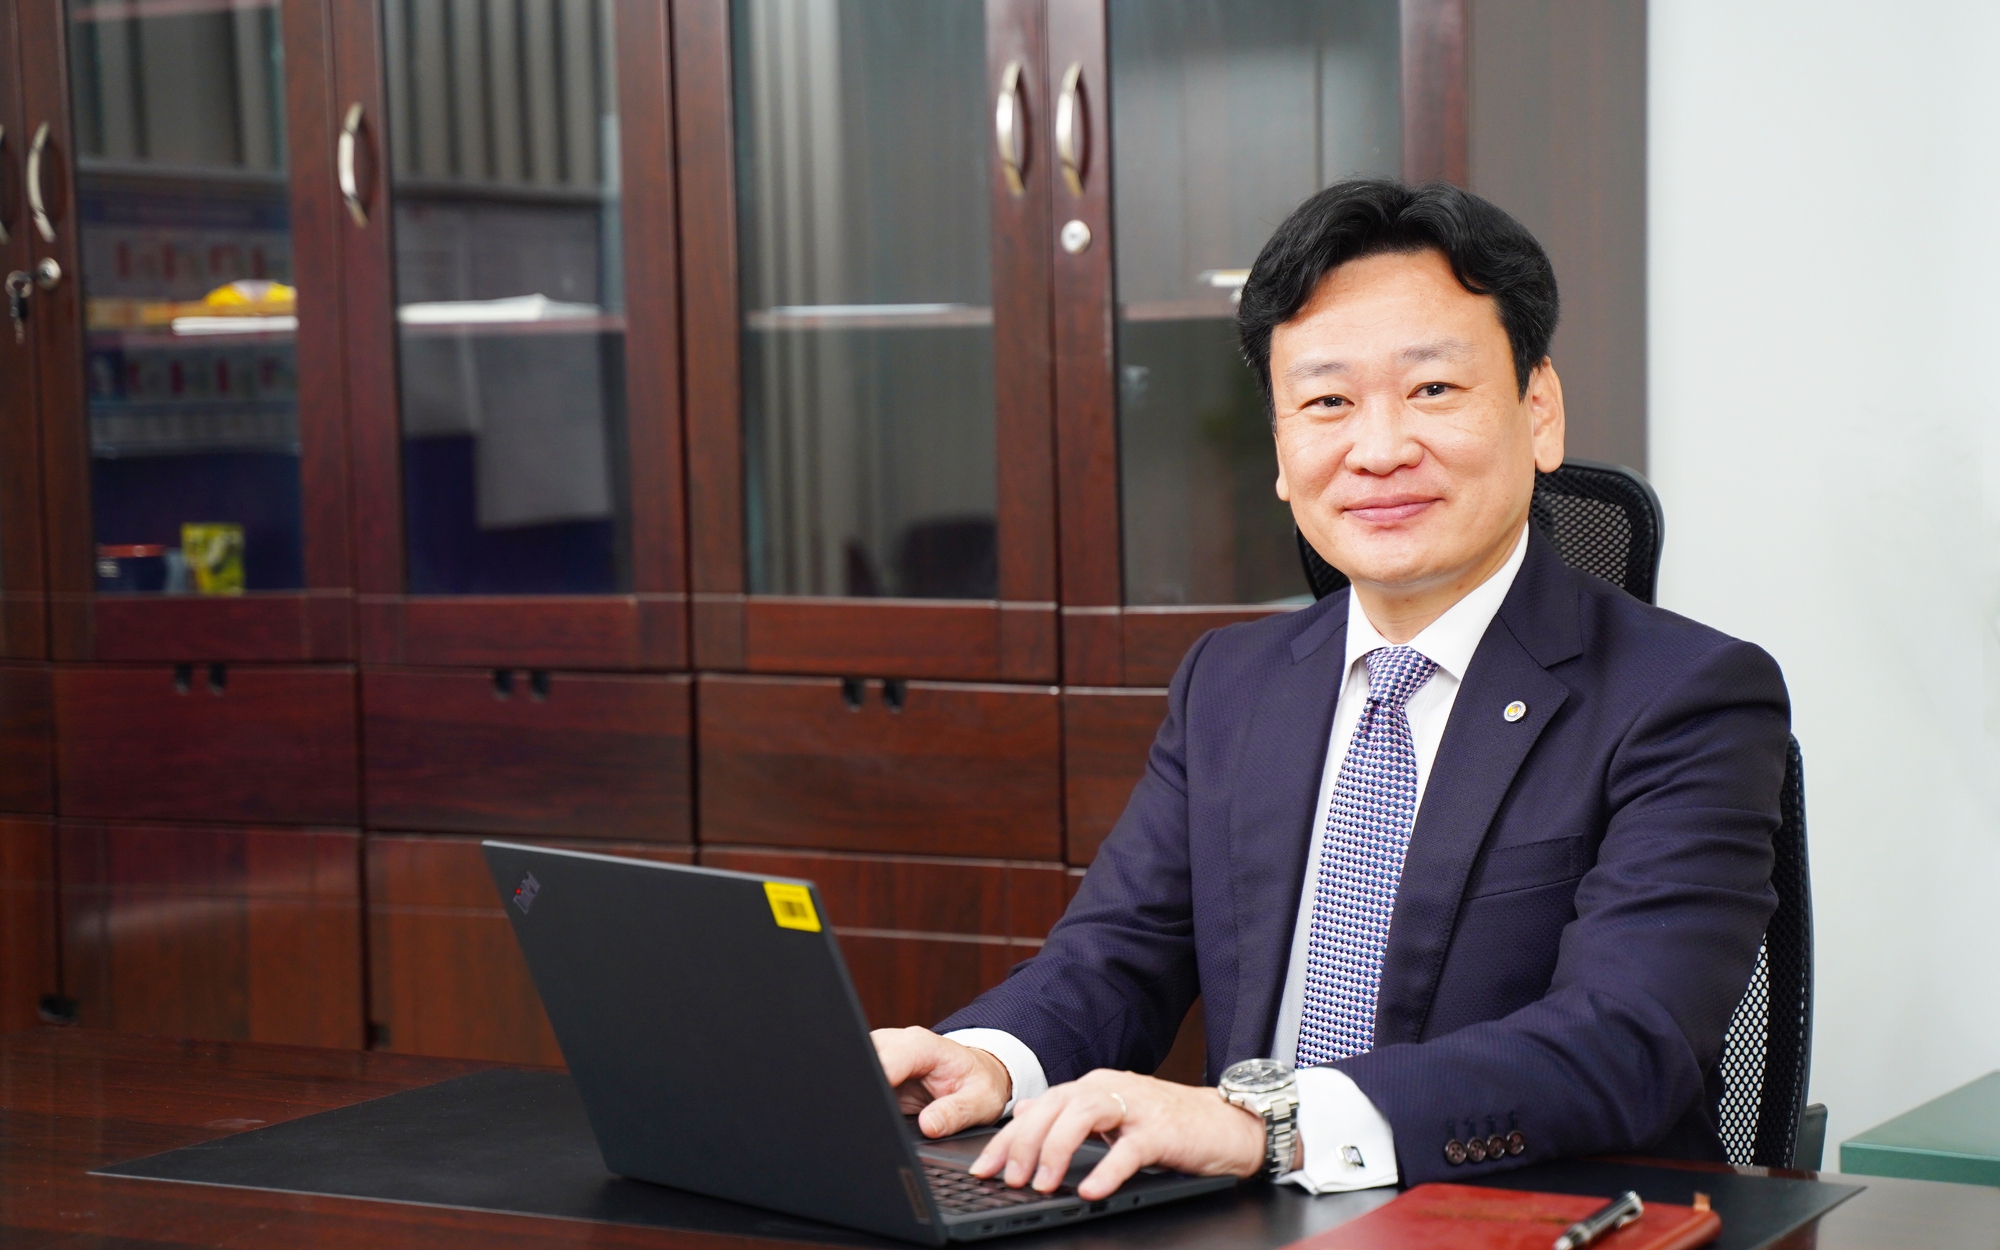 CEO Takahiro Okada: "Chuyến công tác Việt Nam 11 năm trước luôn khiến tôi muốn trở lại đây"